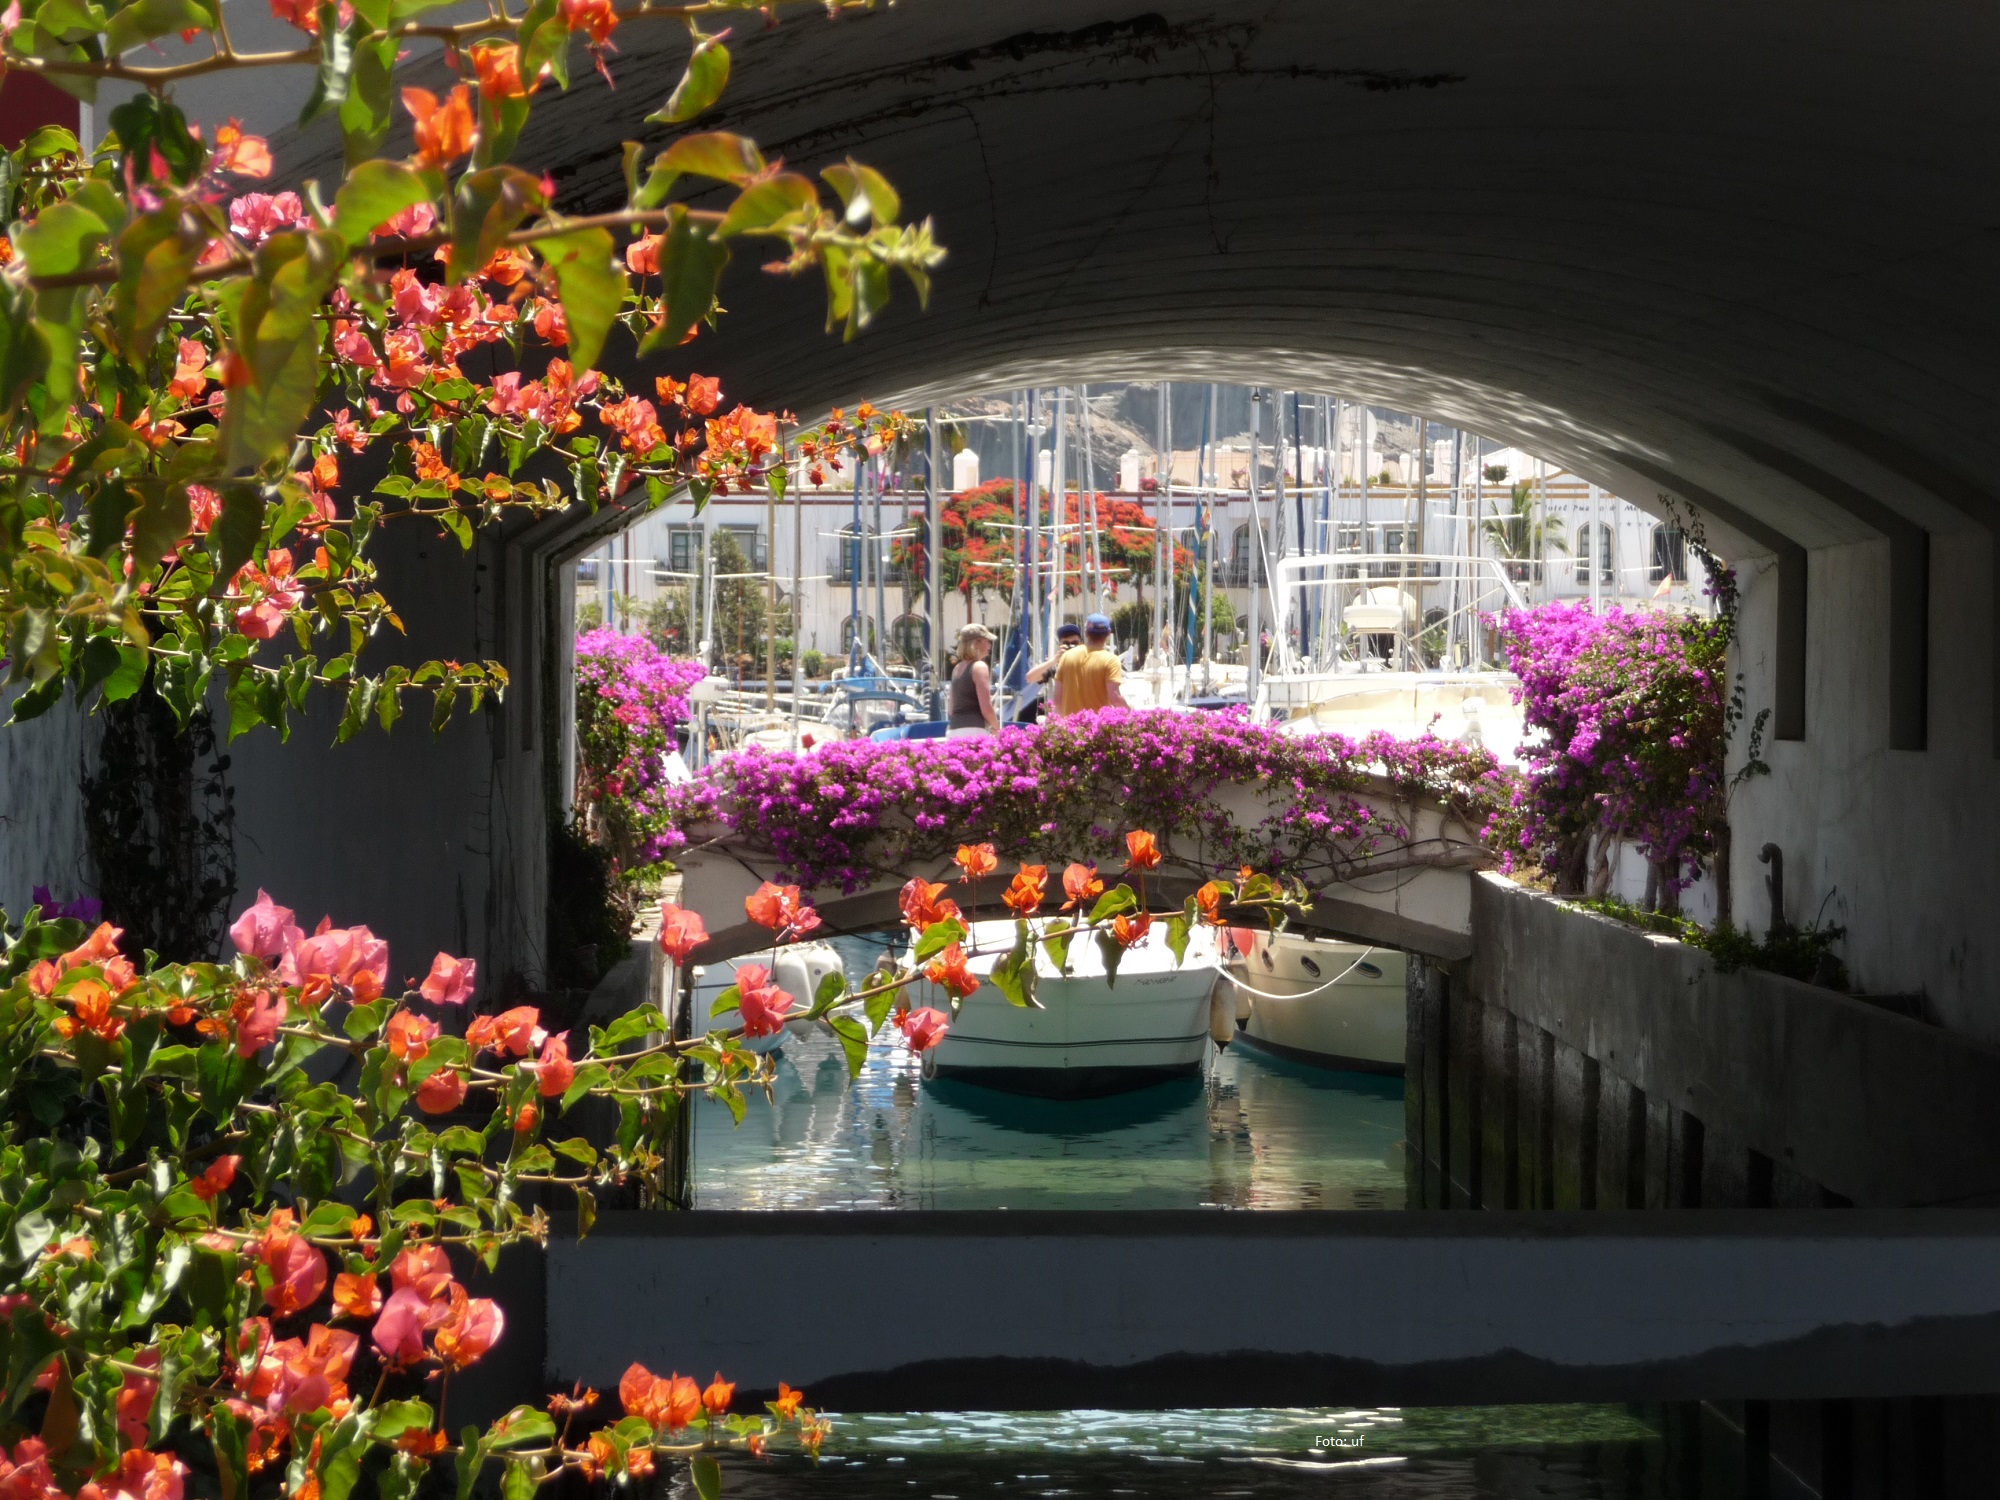 Schön angelegte Brücken und Kanäle verziert mit herrlichen Blumenranken in "Klein-Venedig" in Puerto de Mogàn